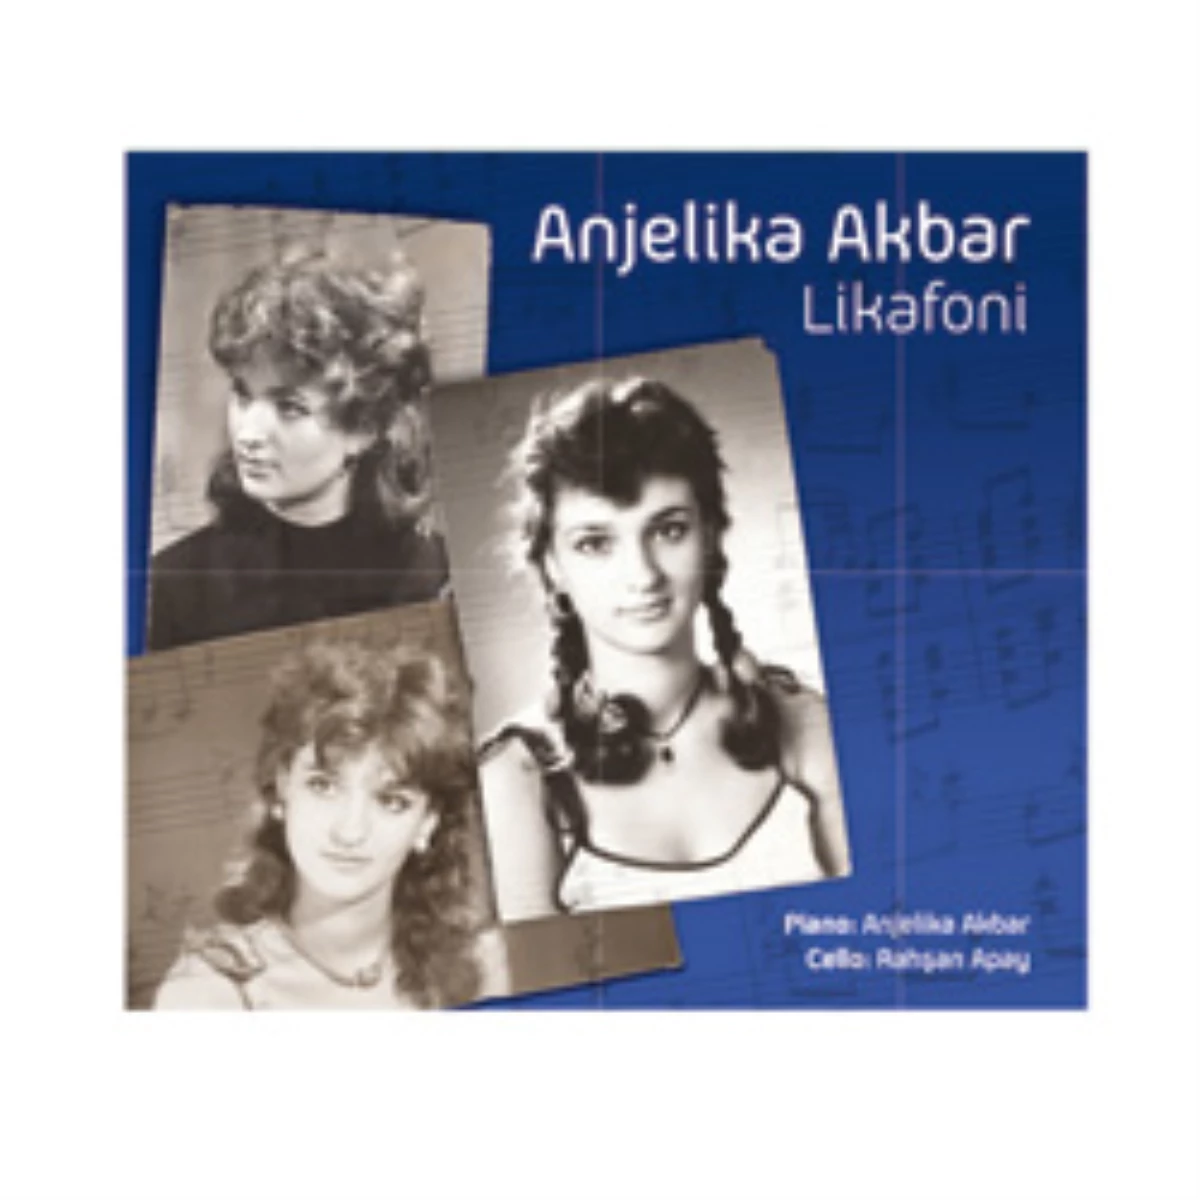 Anjelika Akbar, "Likafoni" Albümüyle Gençlere Sesleniyor!
